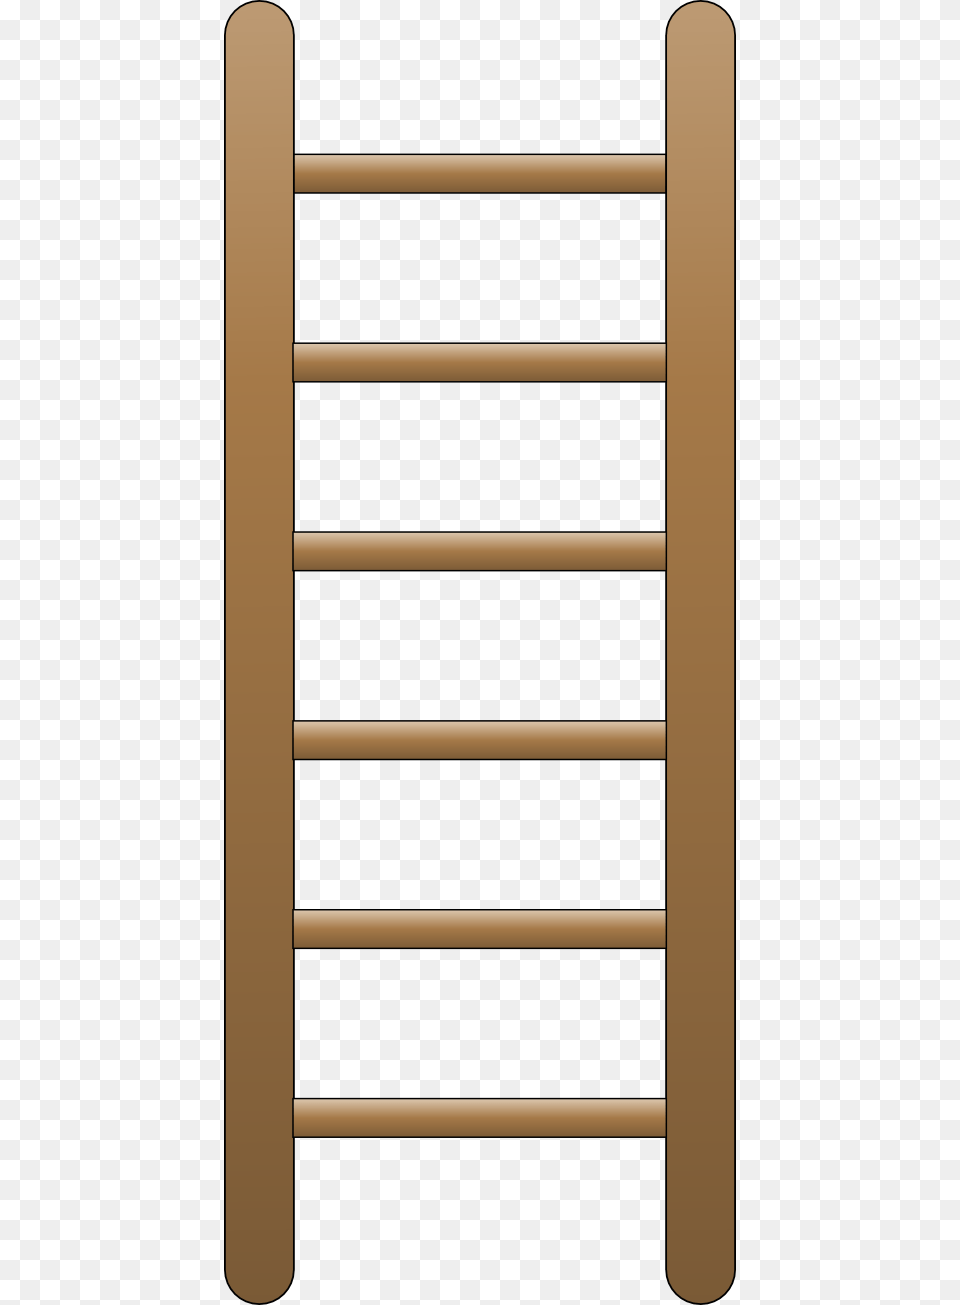 Ladder Png Image